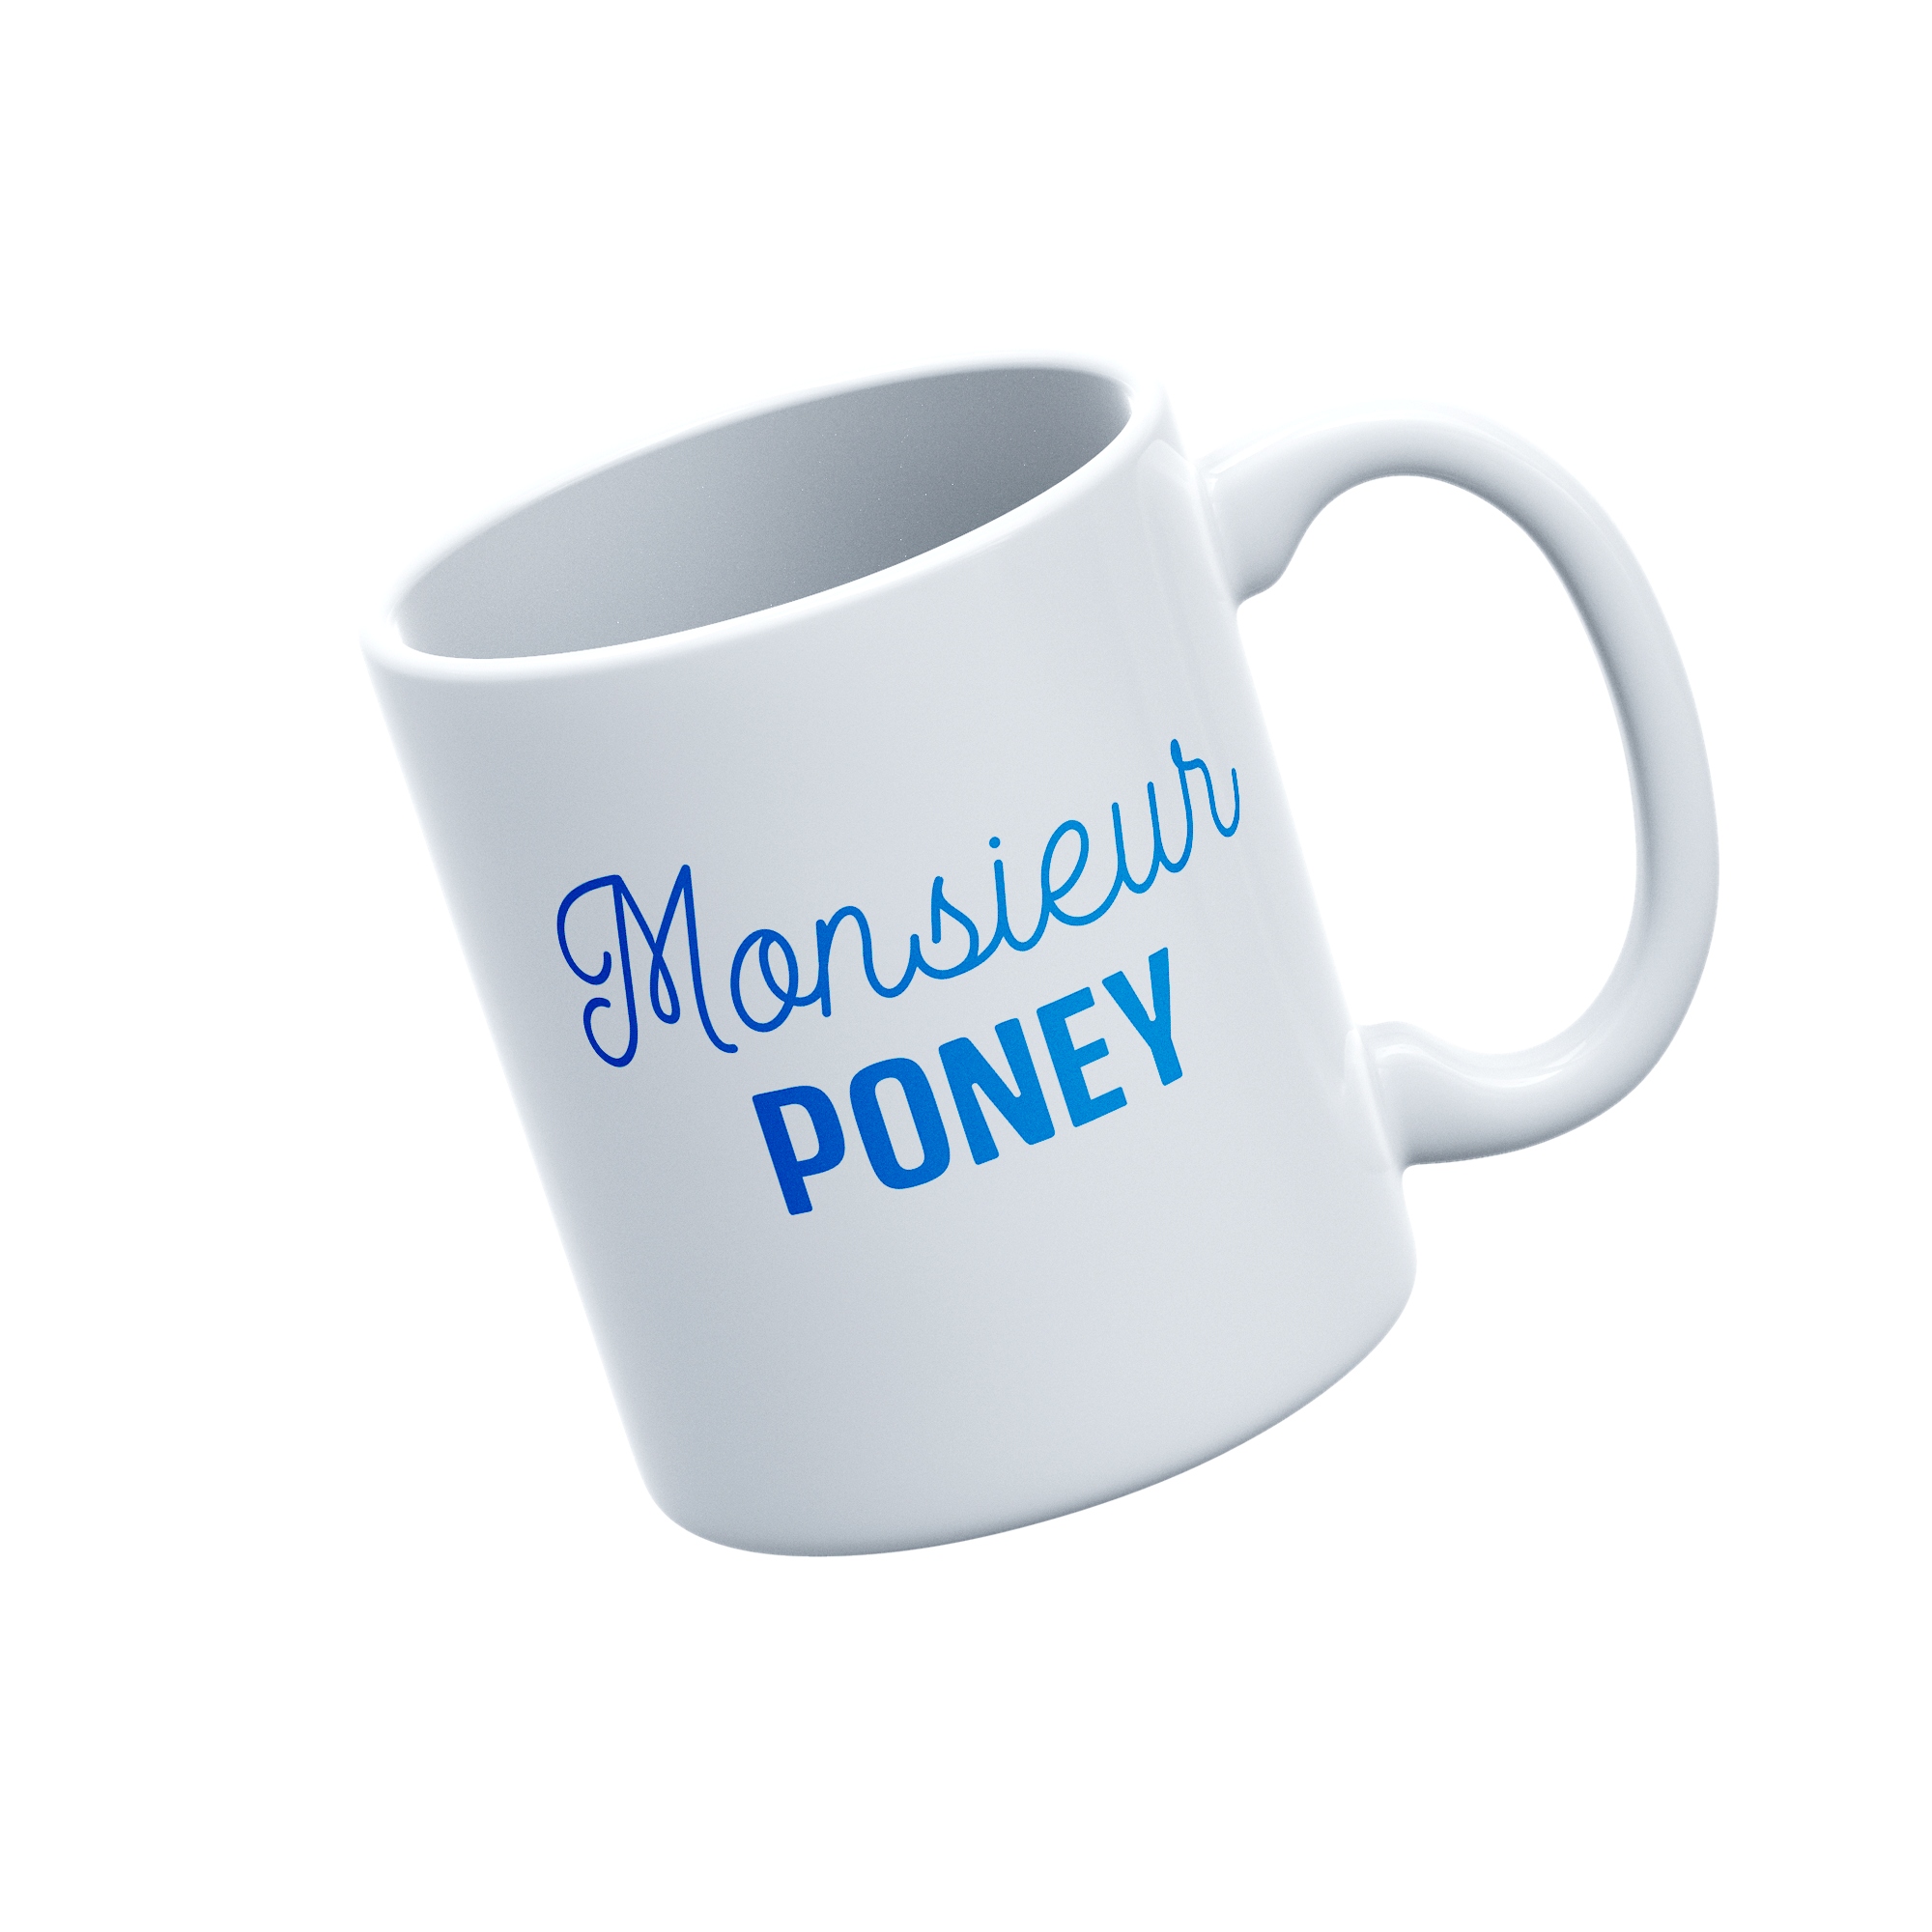 Monsieur PONEY - MUG